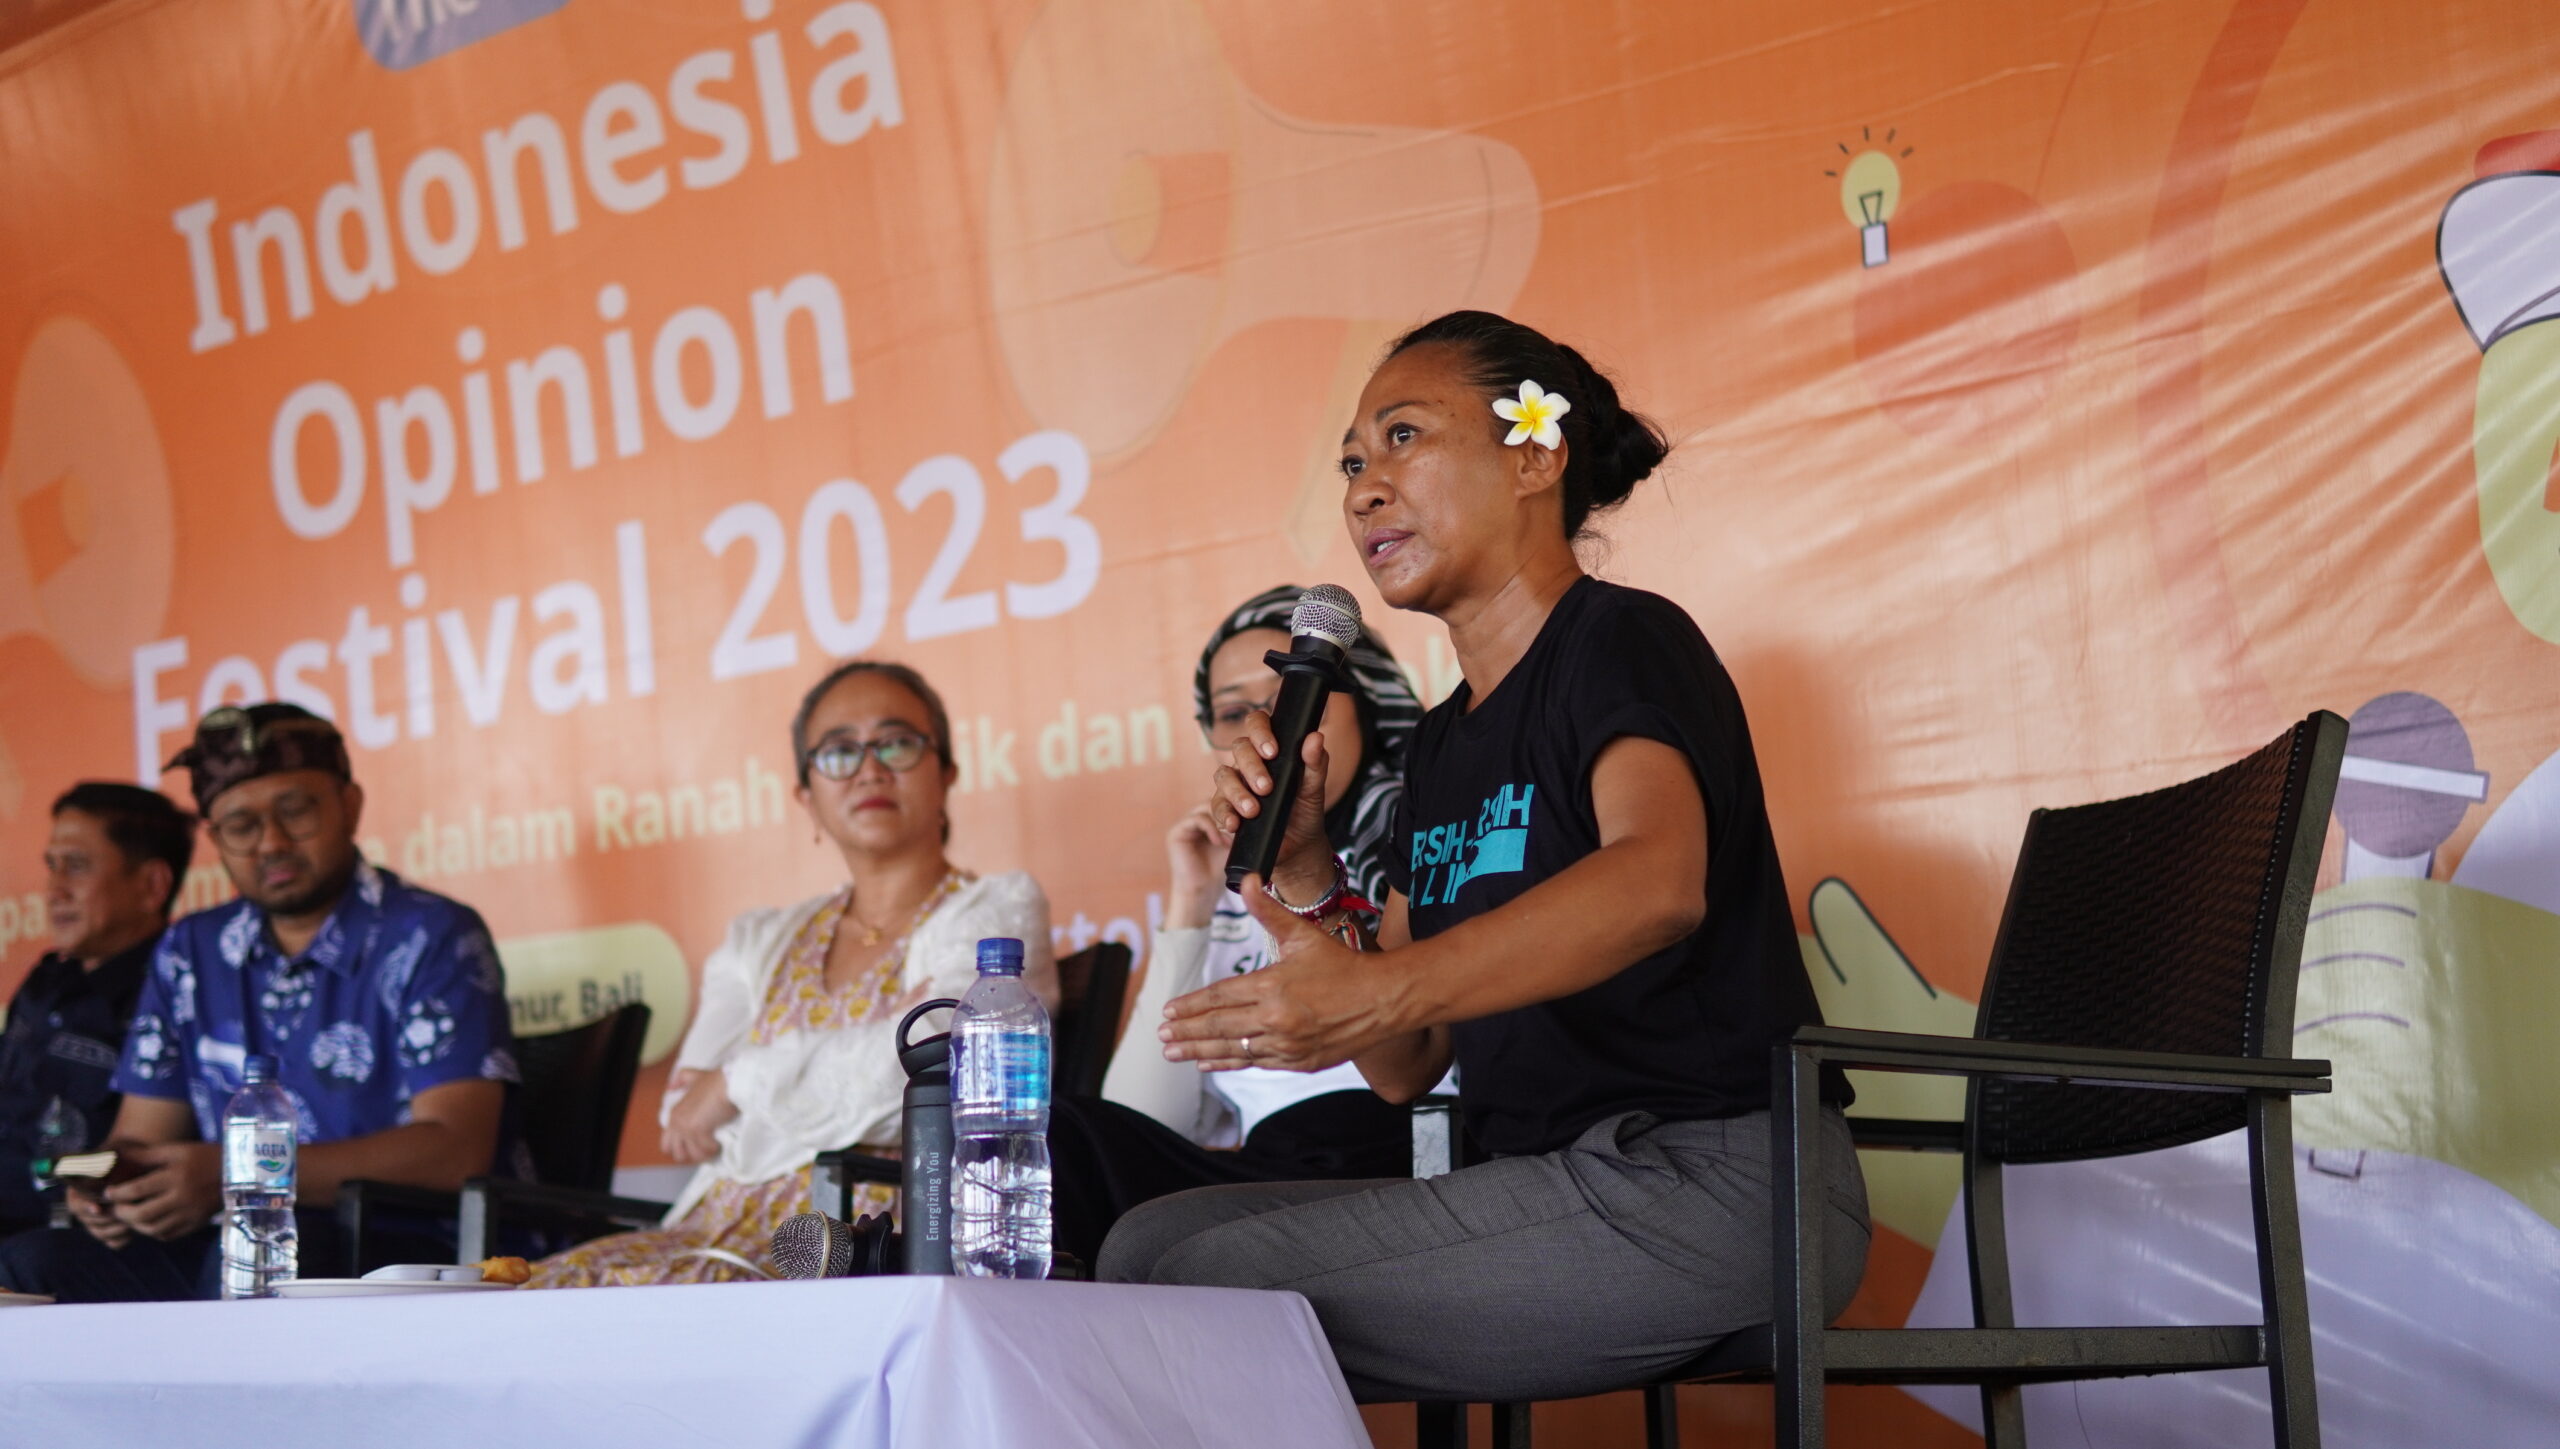 Terinspirasi dari Estonia, Indonesia menyelenggarakan festival berkonsep